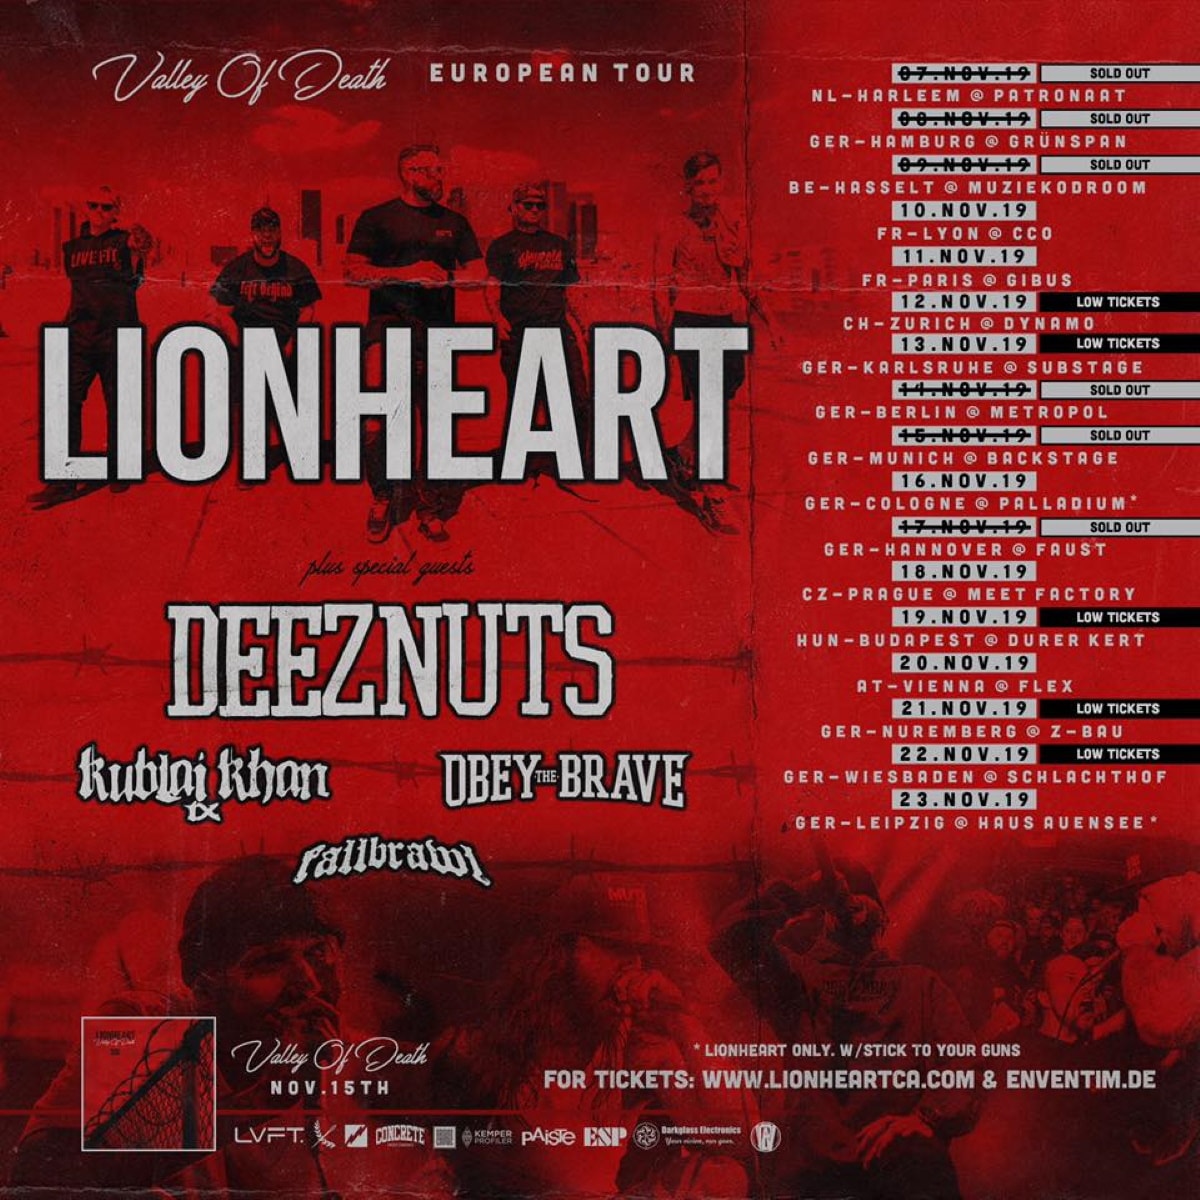 LIONHEART dates